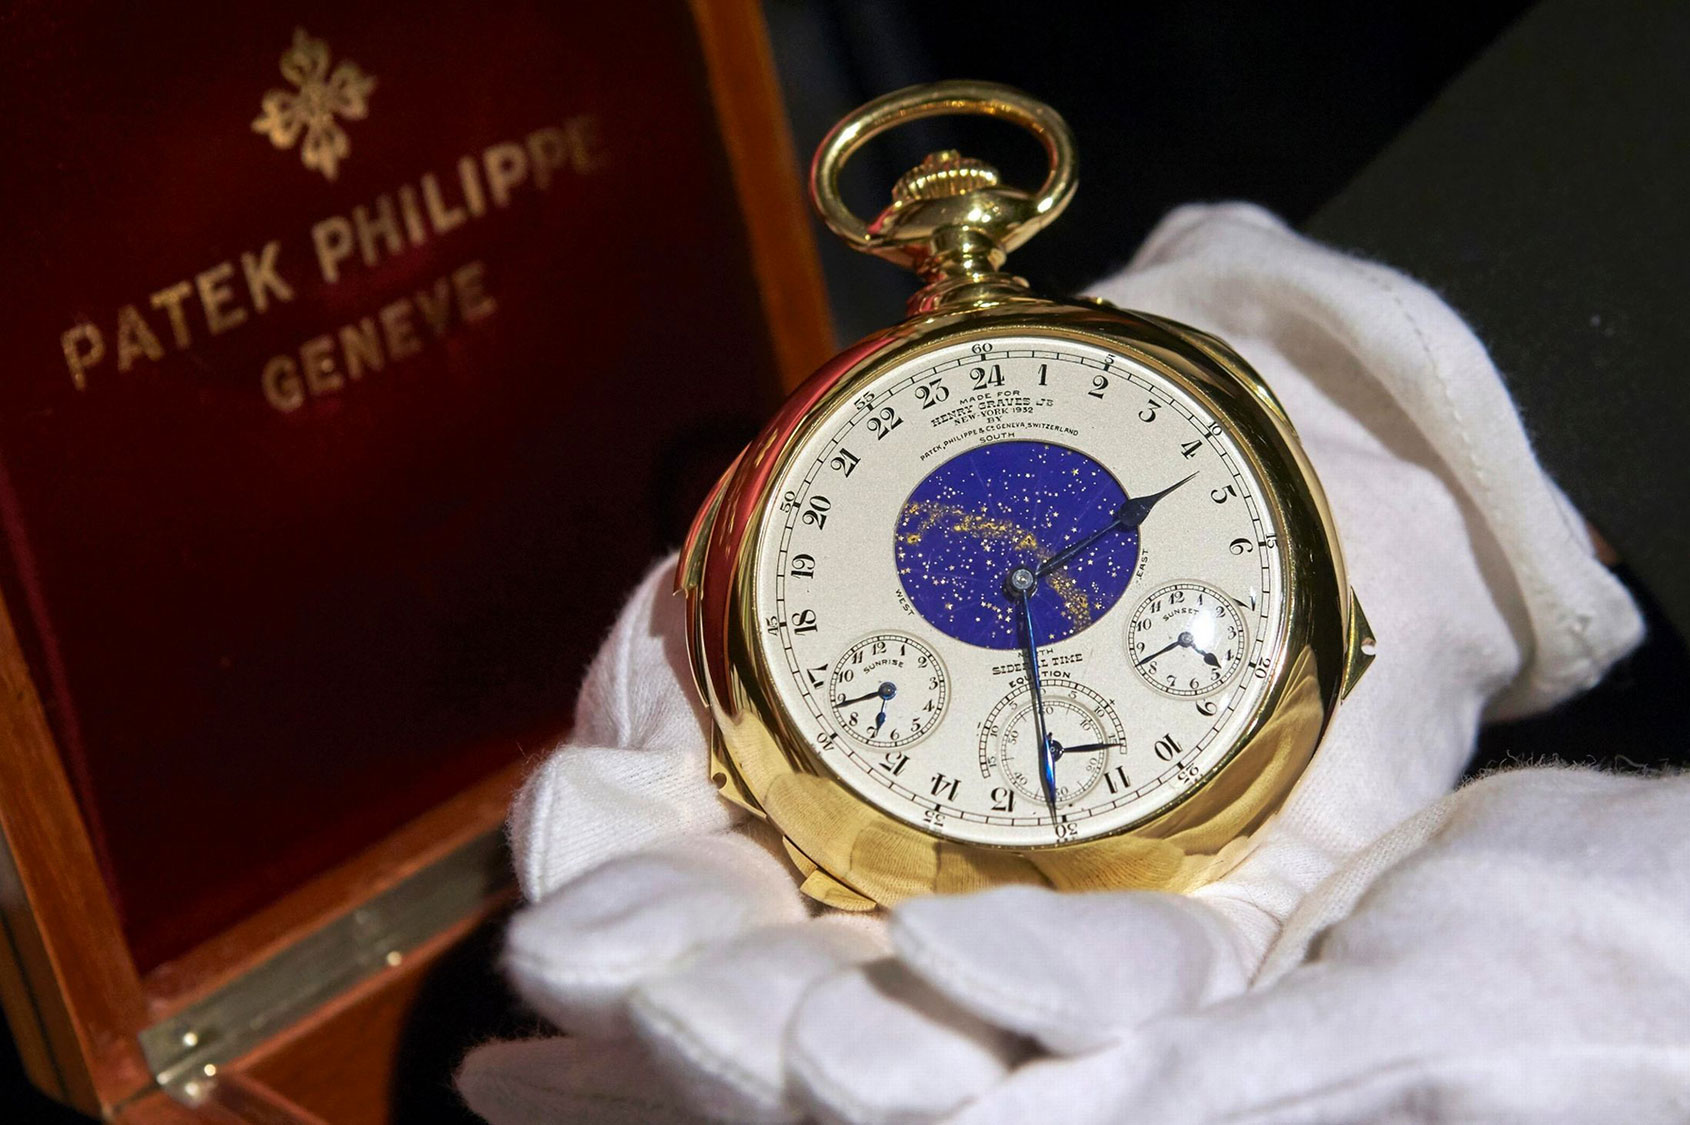 Đồng hồ Patek Philippe Henry Graves Supercomplication có giá lên tới gần 550 tỷ đồng